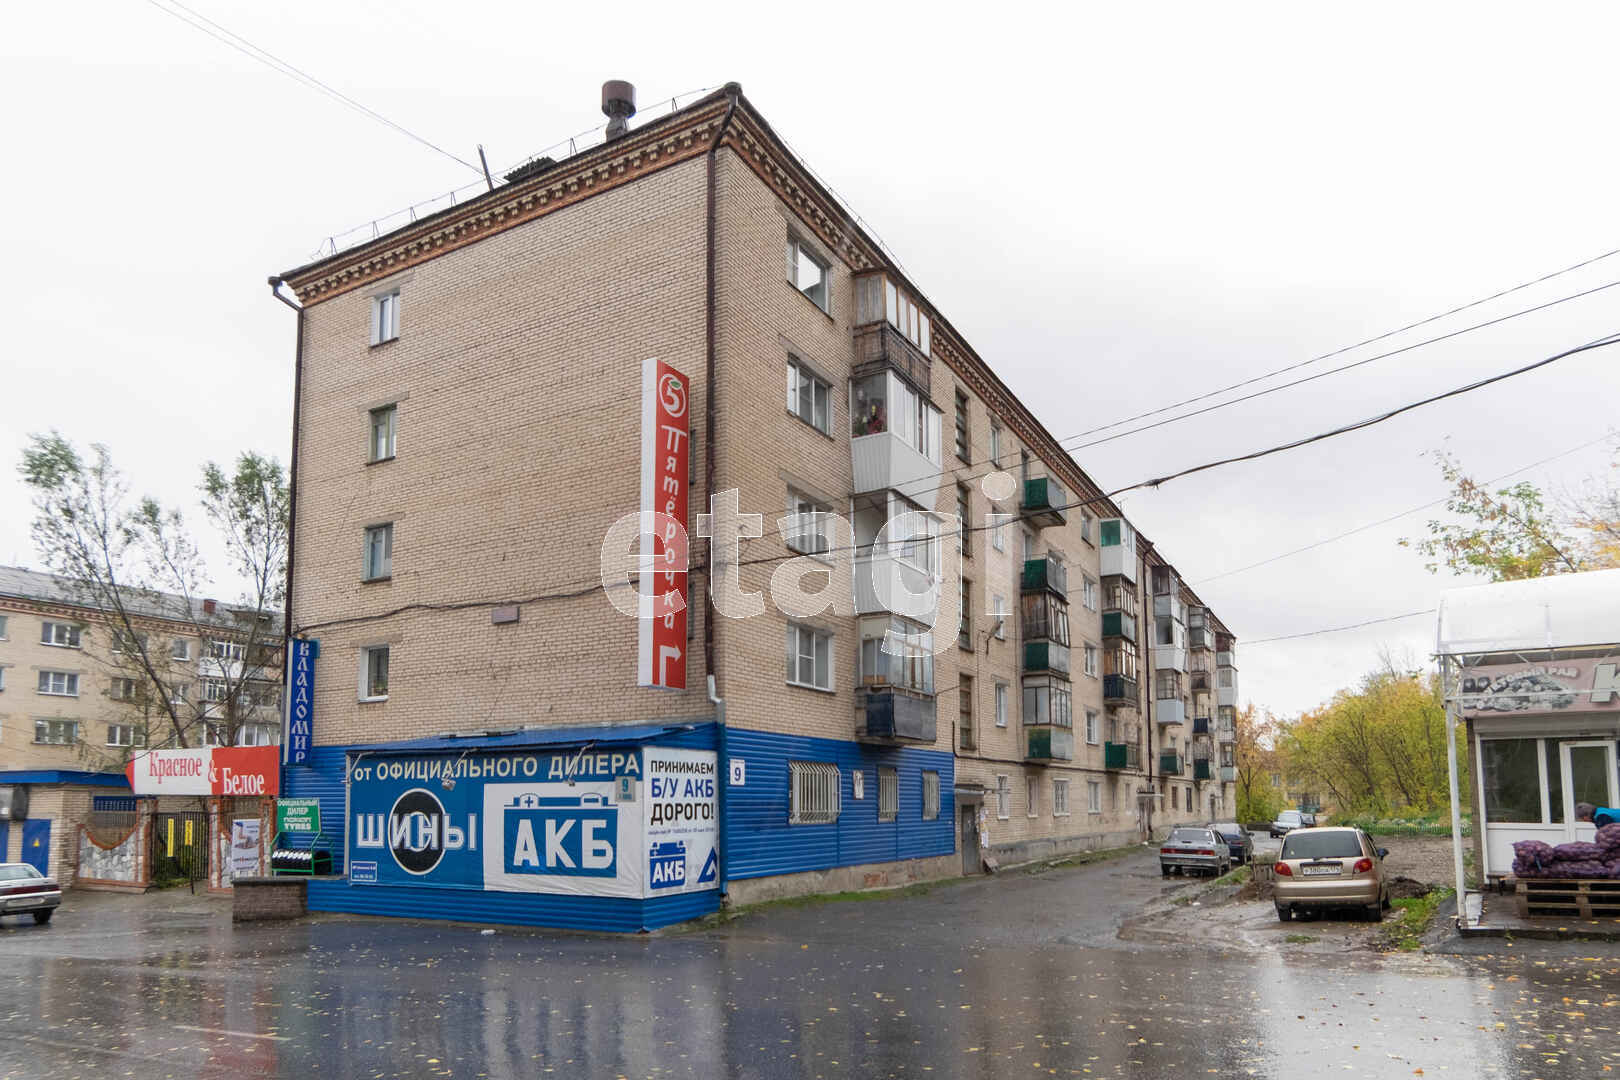 Продажа 1-комнатной квартиры, Челябинск, Челябинская область,  Златоуст